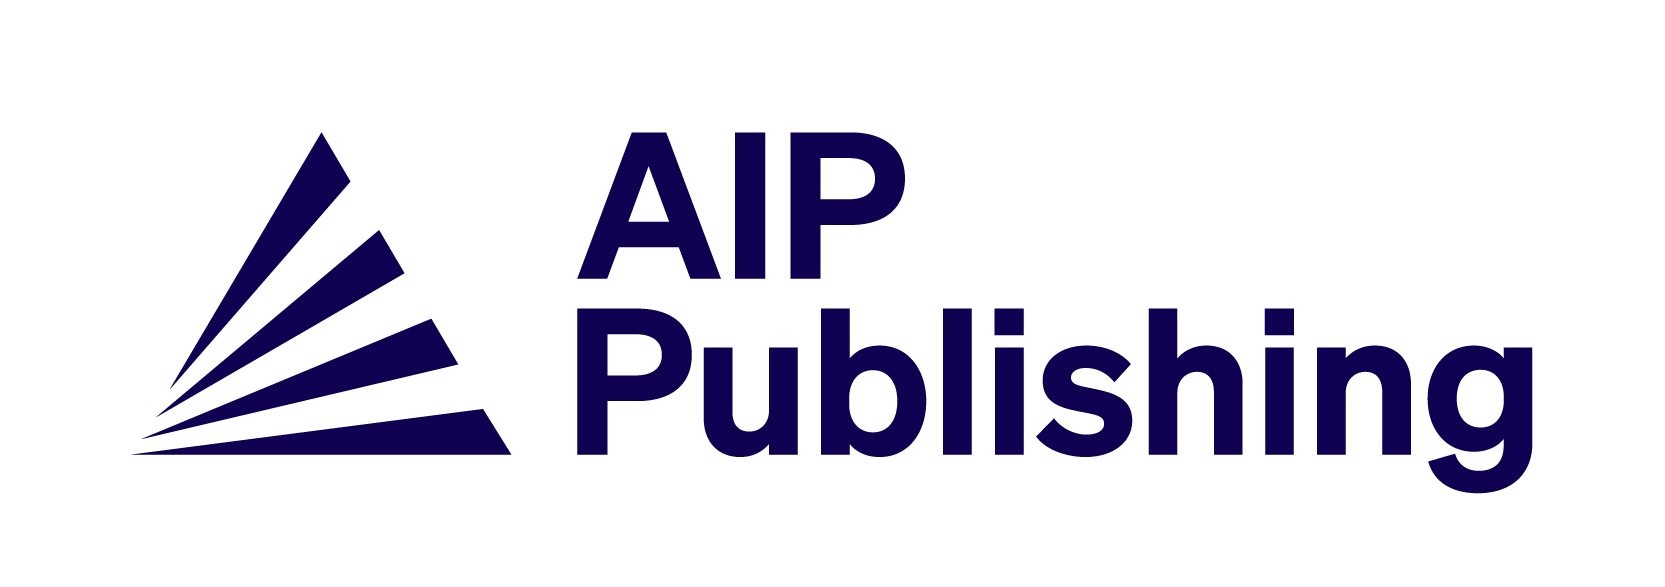 AIP Publishing logo